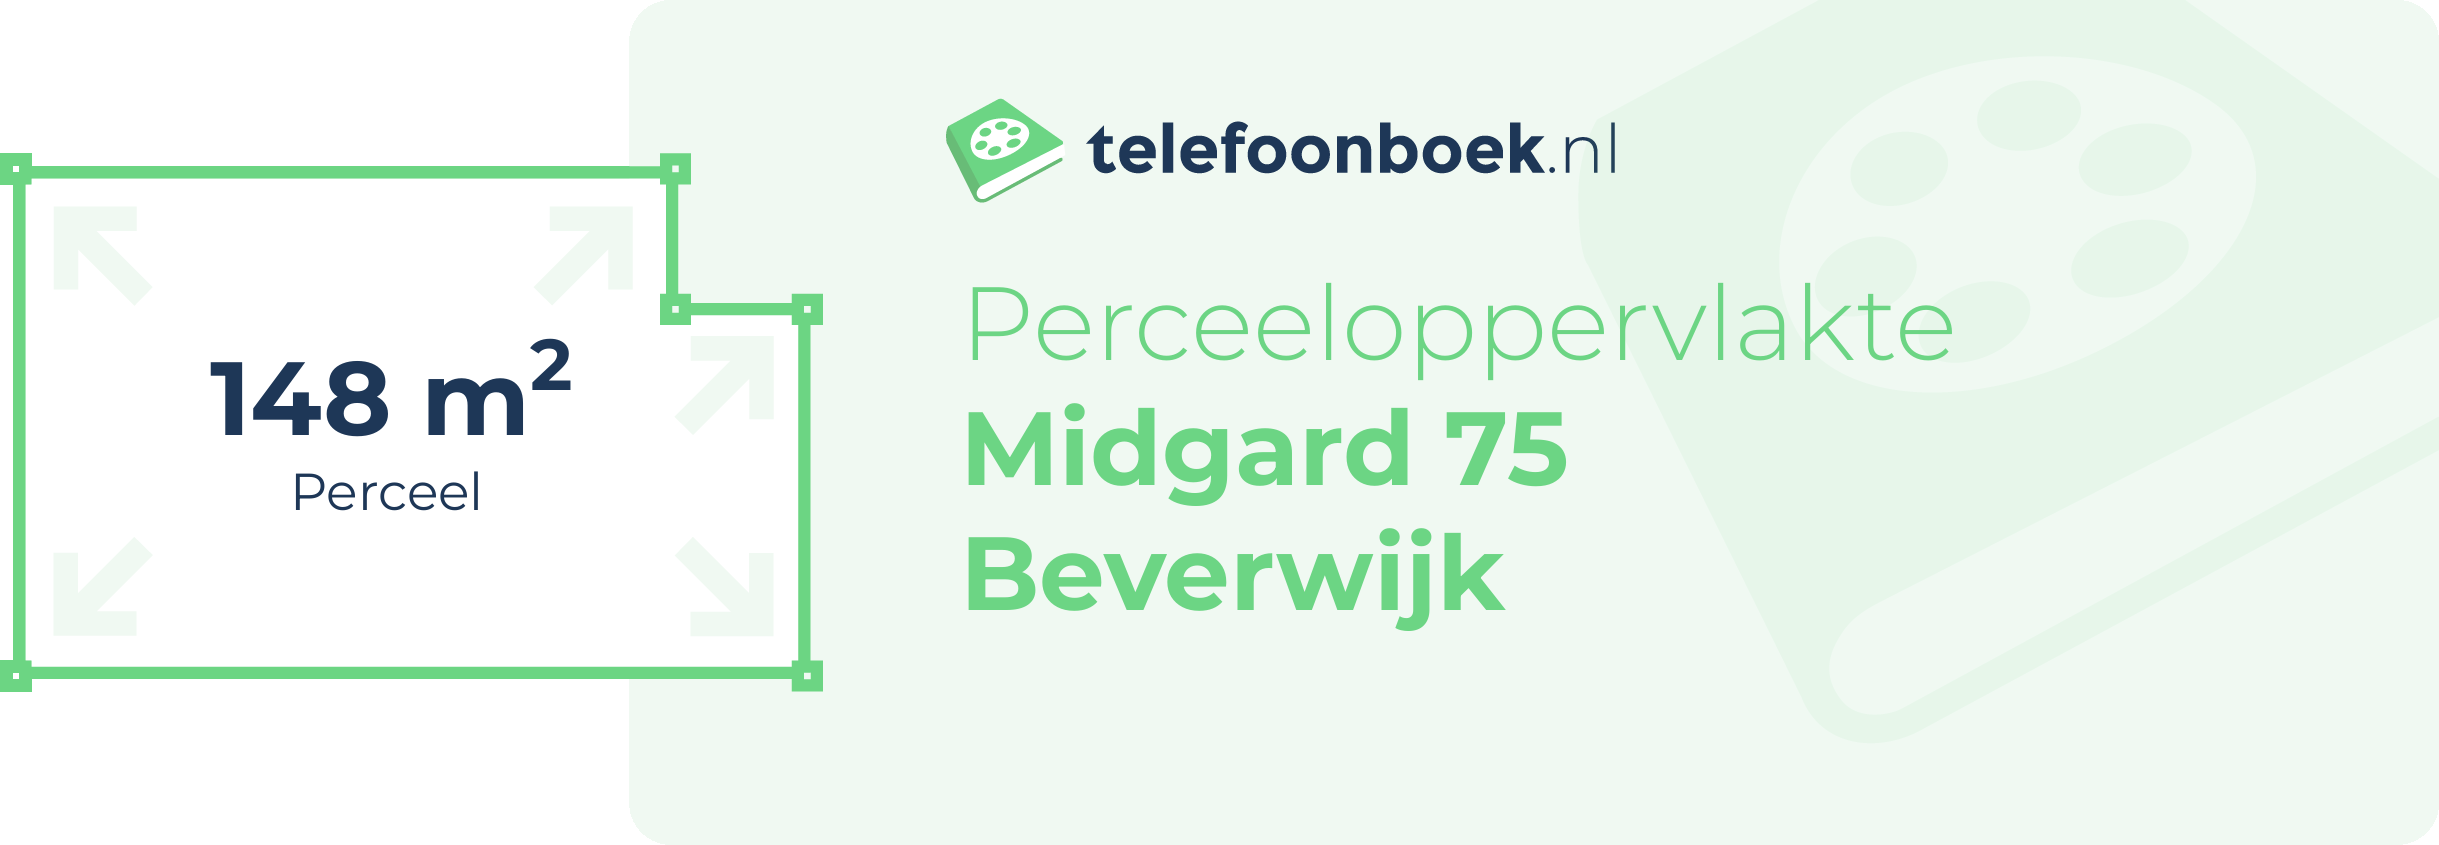 Perceeloppervlakte Midgard 75 Beverwijk